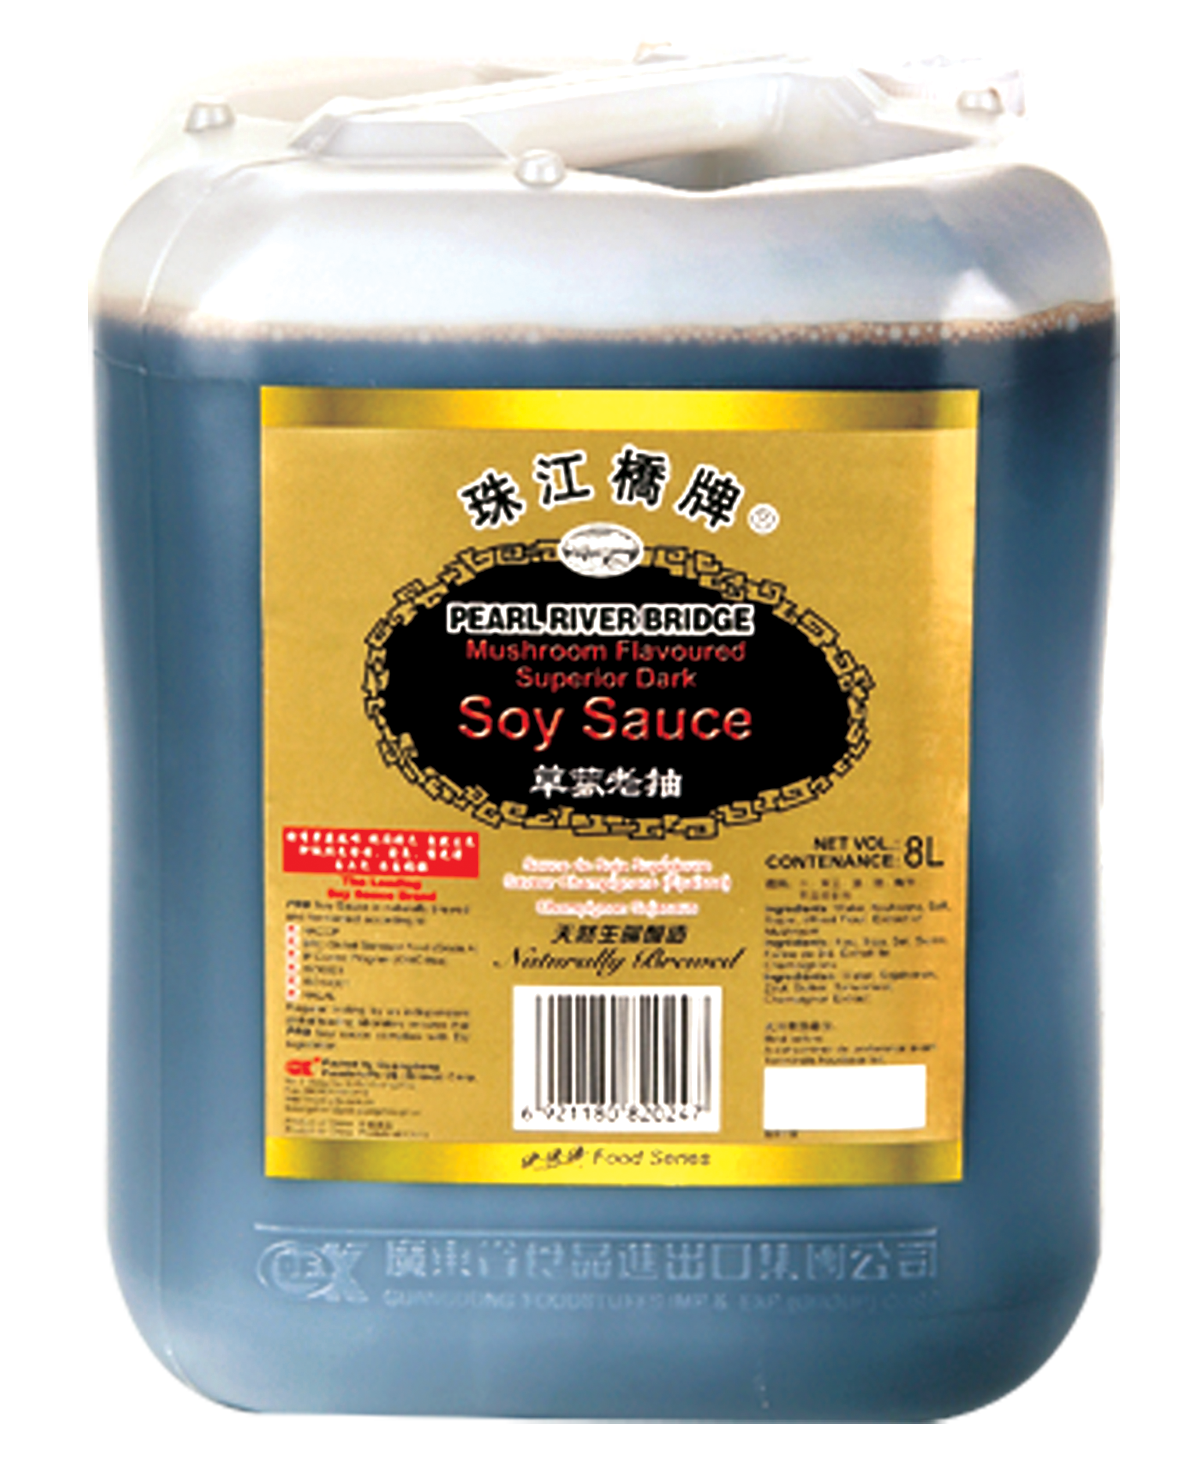 Sauce soja supérieure épaisse aux champignons (草菰老抽) PRB - Épicerie sucrée  et salée, Sauces - Tang Frères